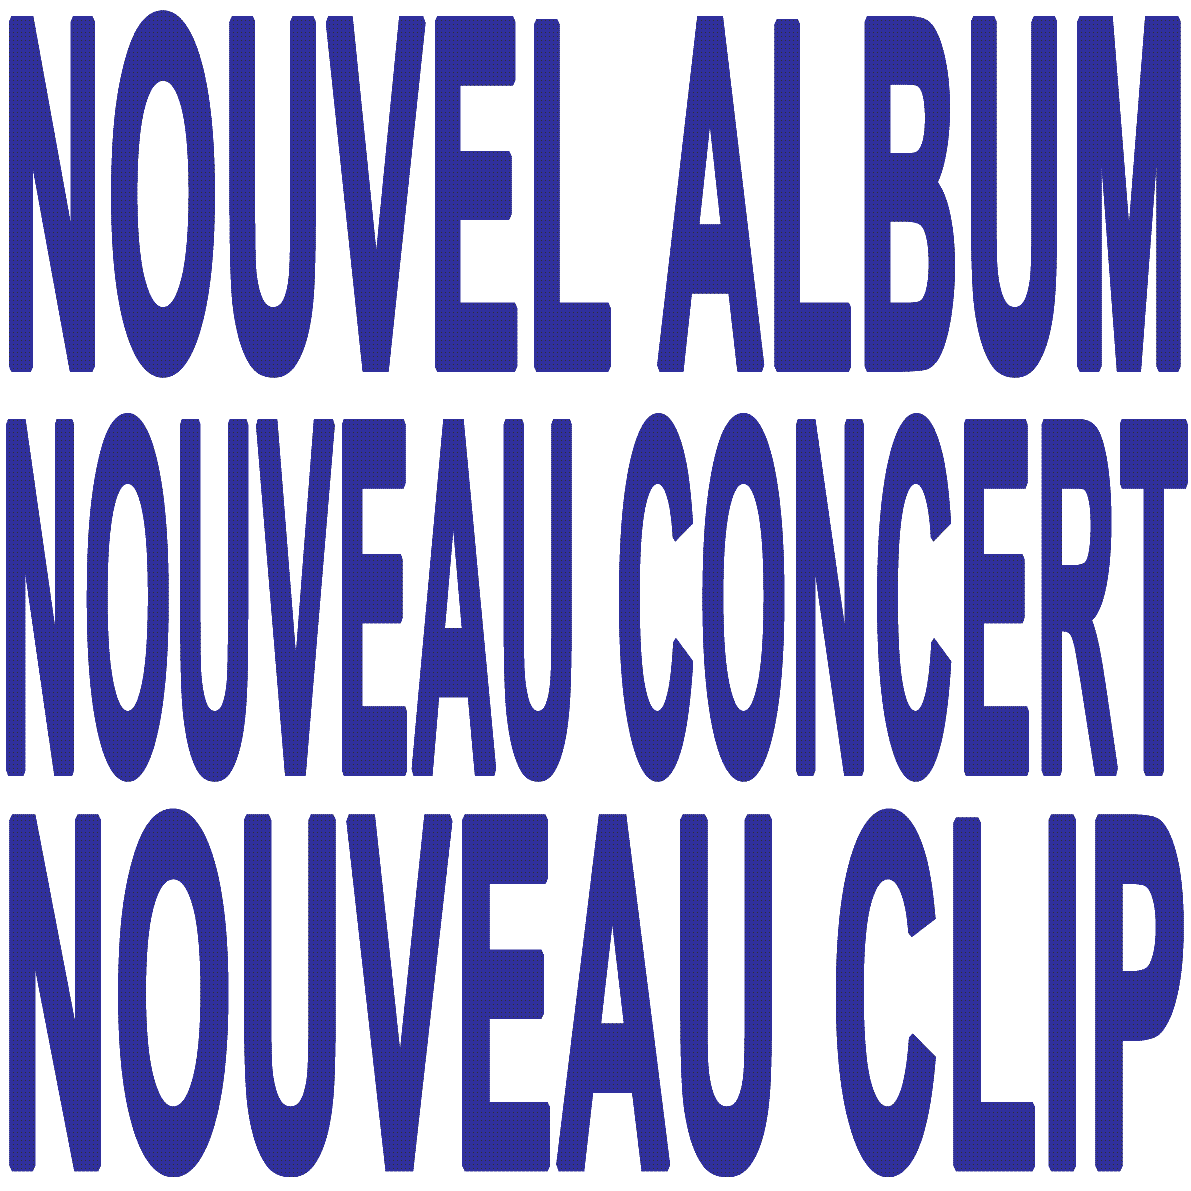 AUTRES RIBINES
NOUVEL ALBUM
NOUVEAU CONCERT
NOUVEAU CLIP